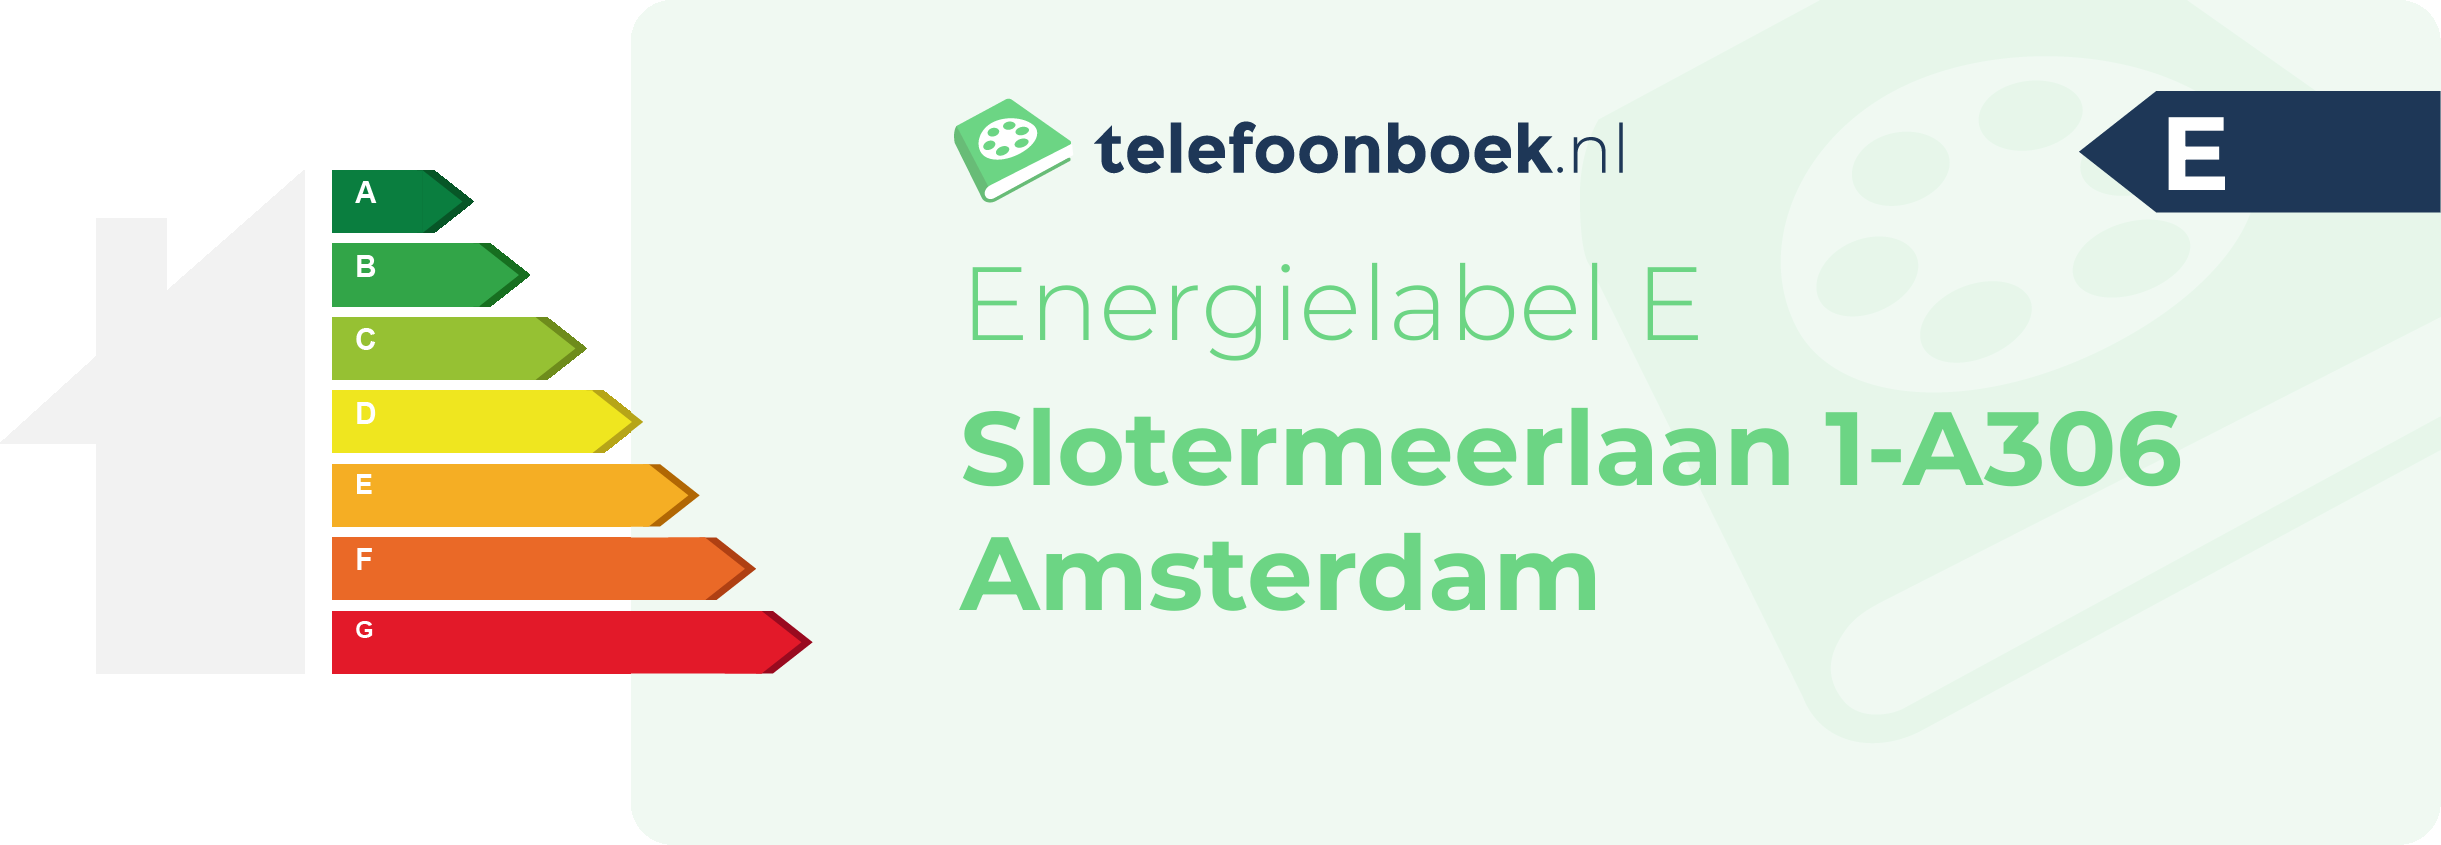 Energielabel Slotermeerlaan 1-A306 Amsterdam